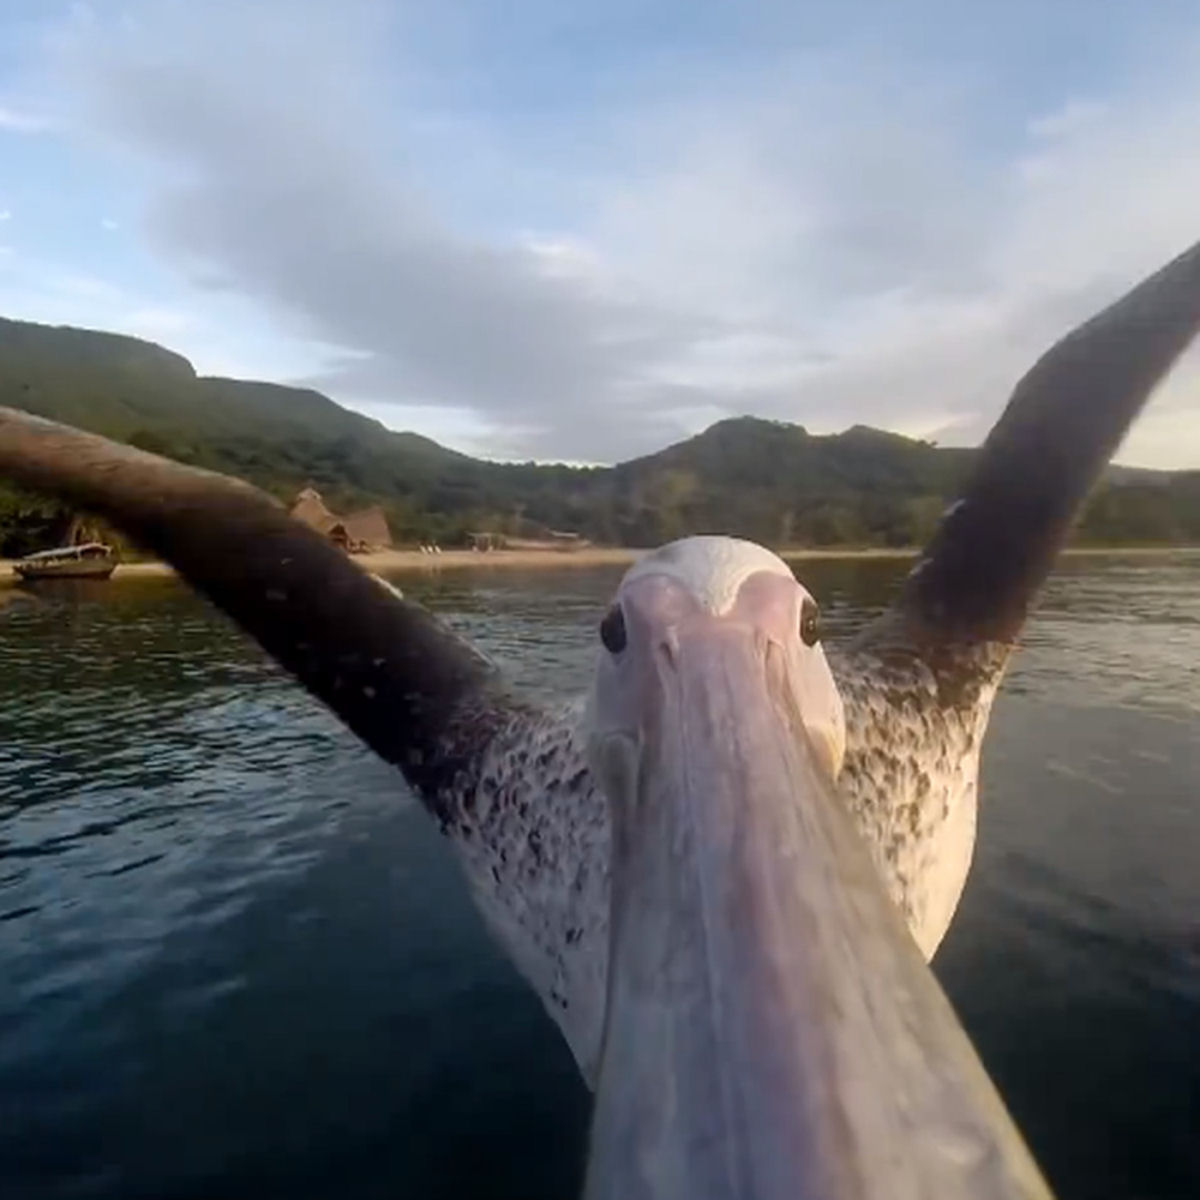 Vdeo incrvel de um pelicano aprendendo a voar far voc se sentir vivo